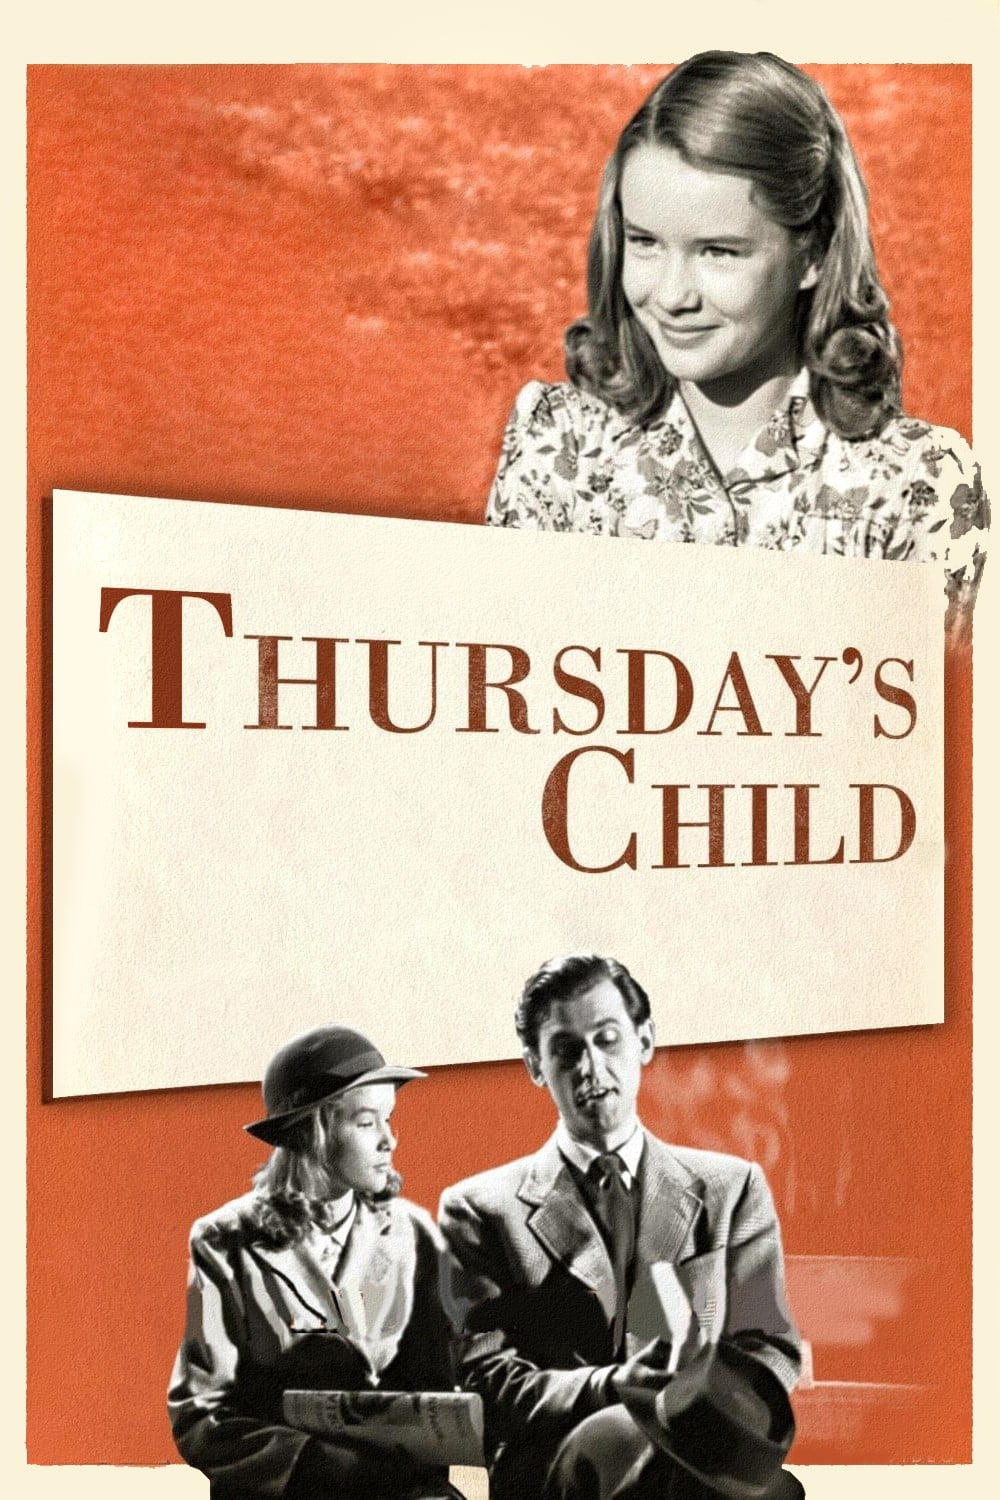 Thursday's Child